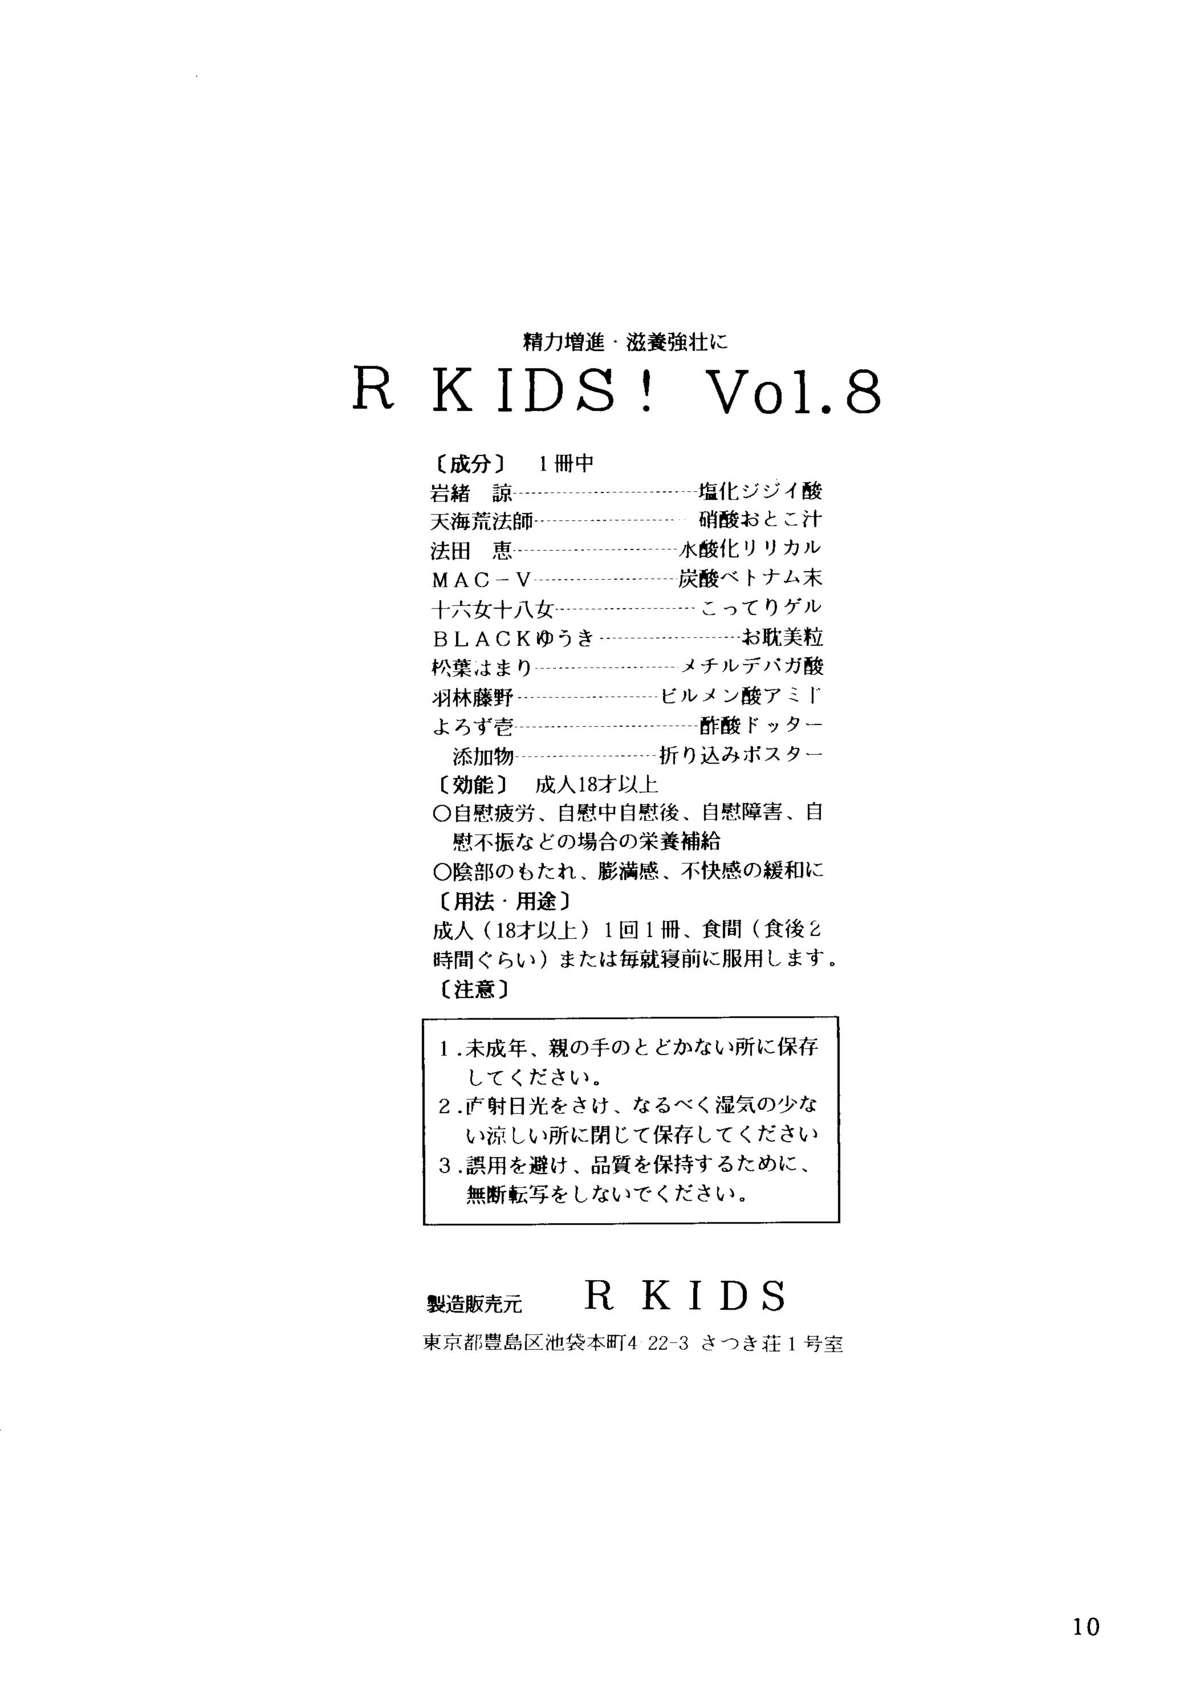 R KIDS! Vol. 8 5